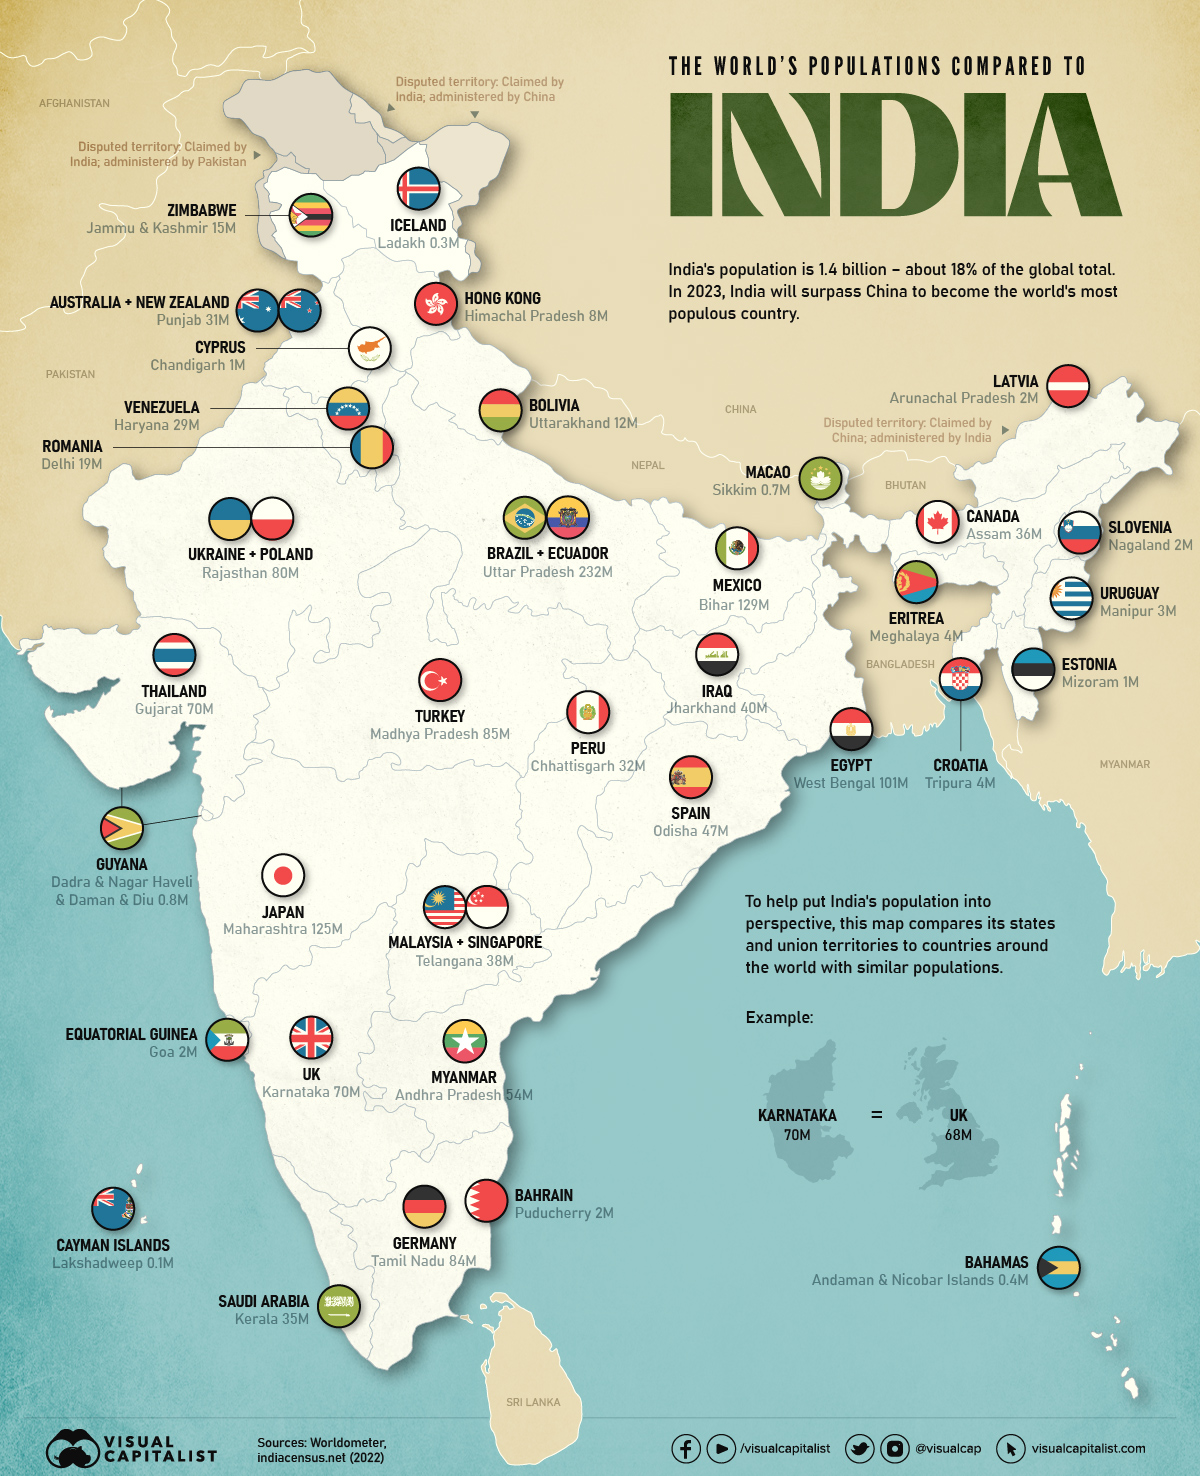 خريطة إنفوجرافيك توضح عدد سكان ولايات وأقاليم الهند مقارنة بالدول